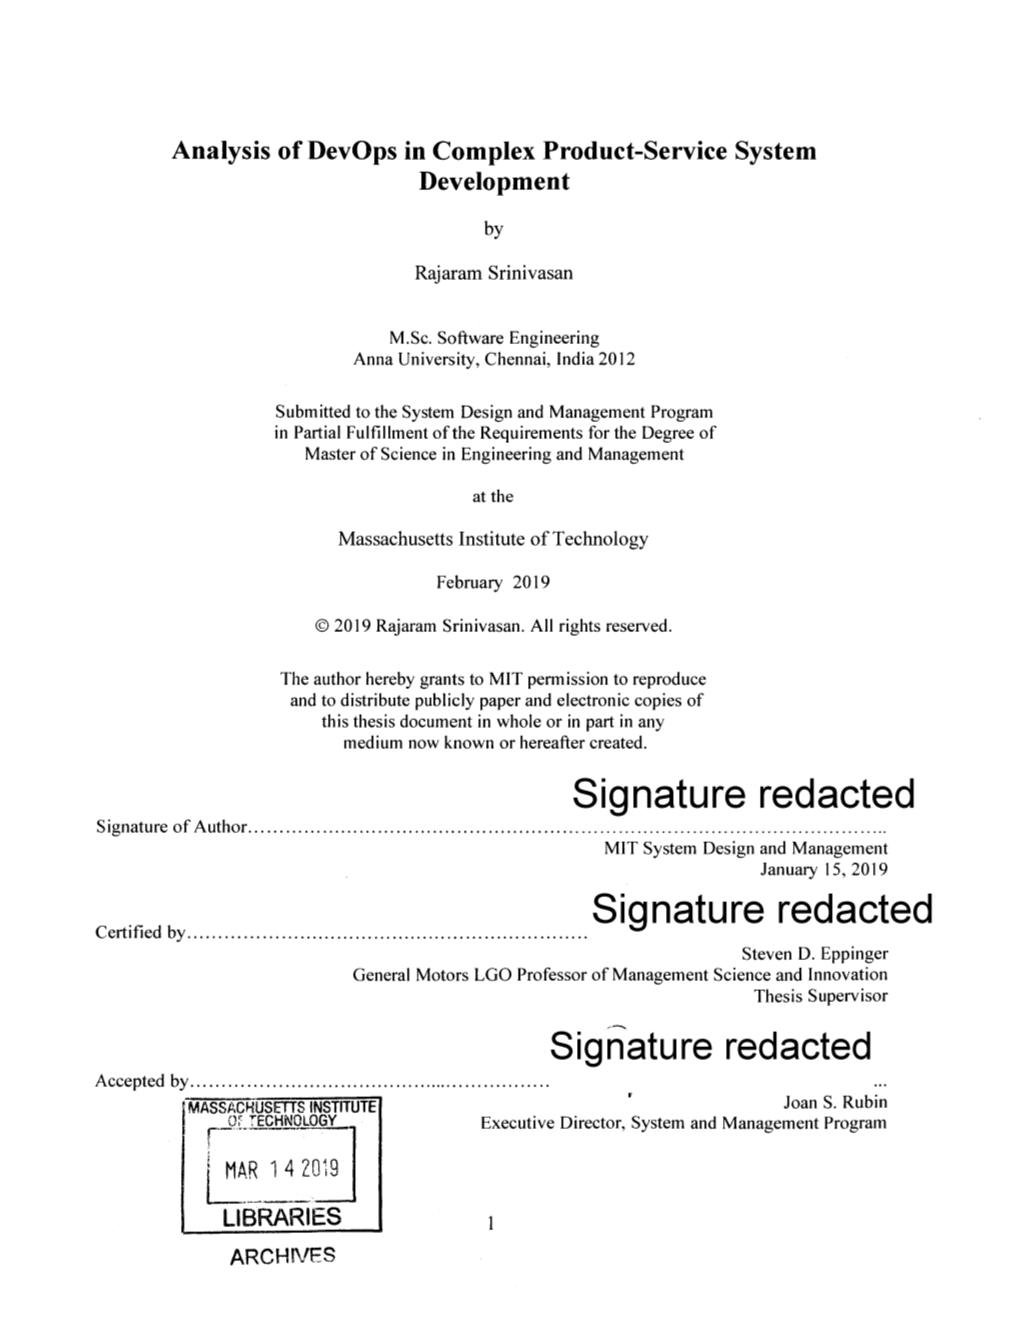 Redacted Signature of Author